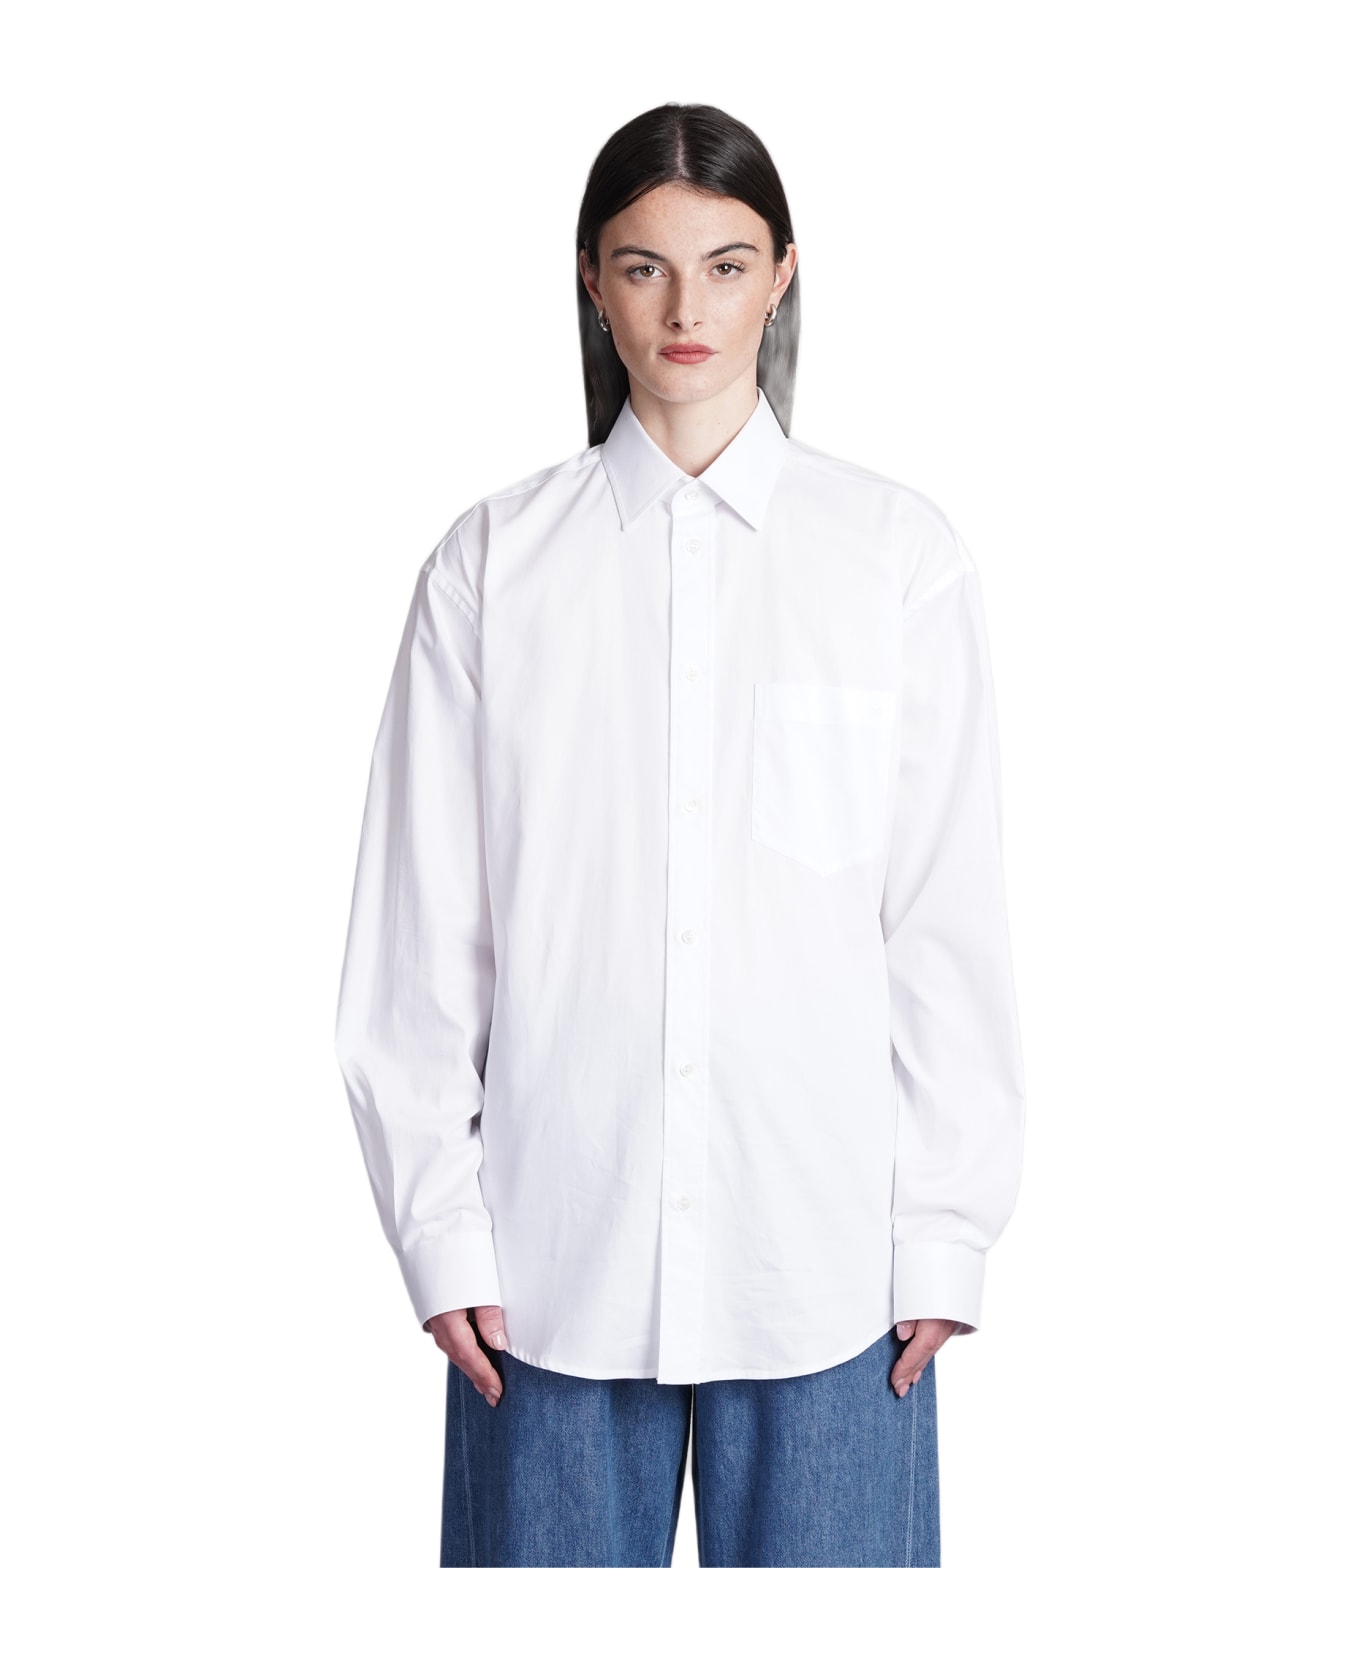 DARKPARK Anne Shirt In White Cotton - white